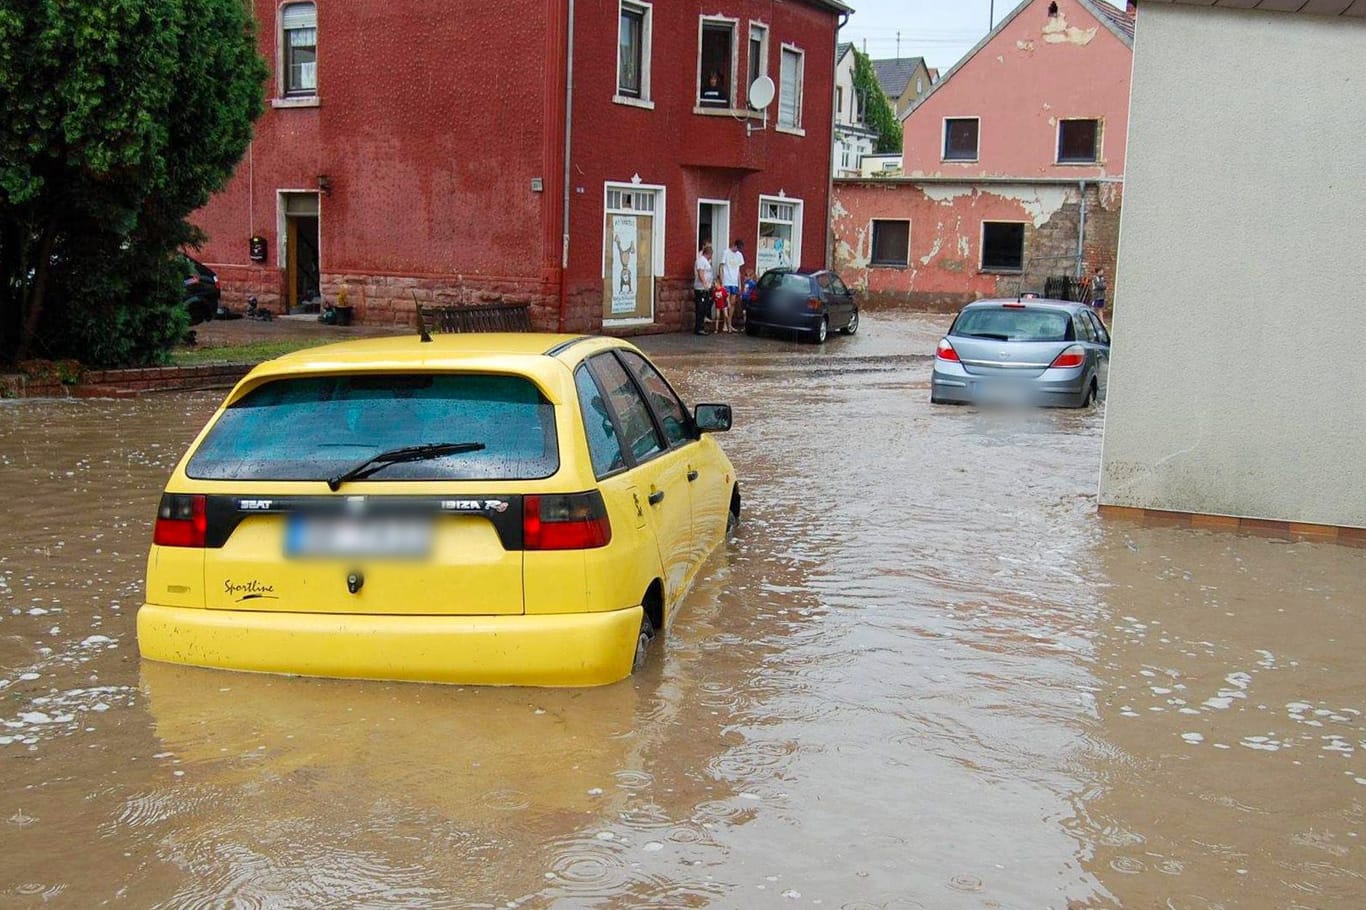 Fahrzeug unter Wasser: Ab einem gewissen Wasserstand besteht Lebensgefahr.